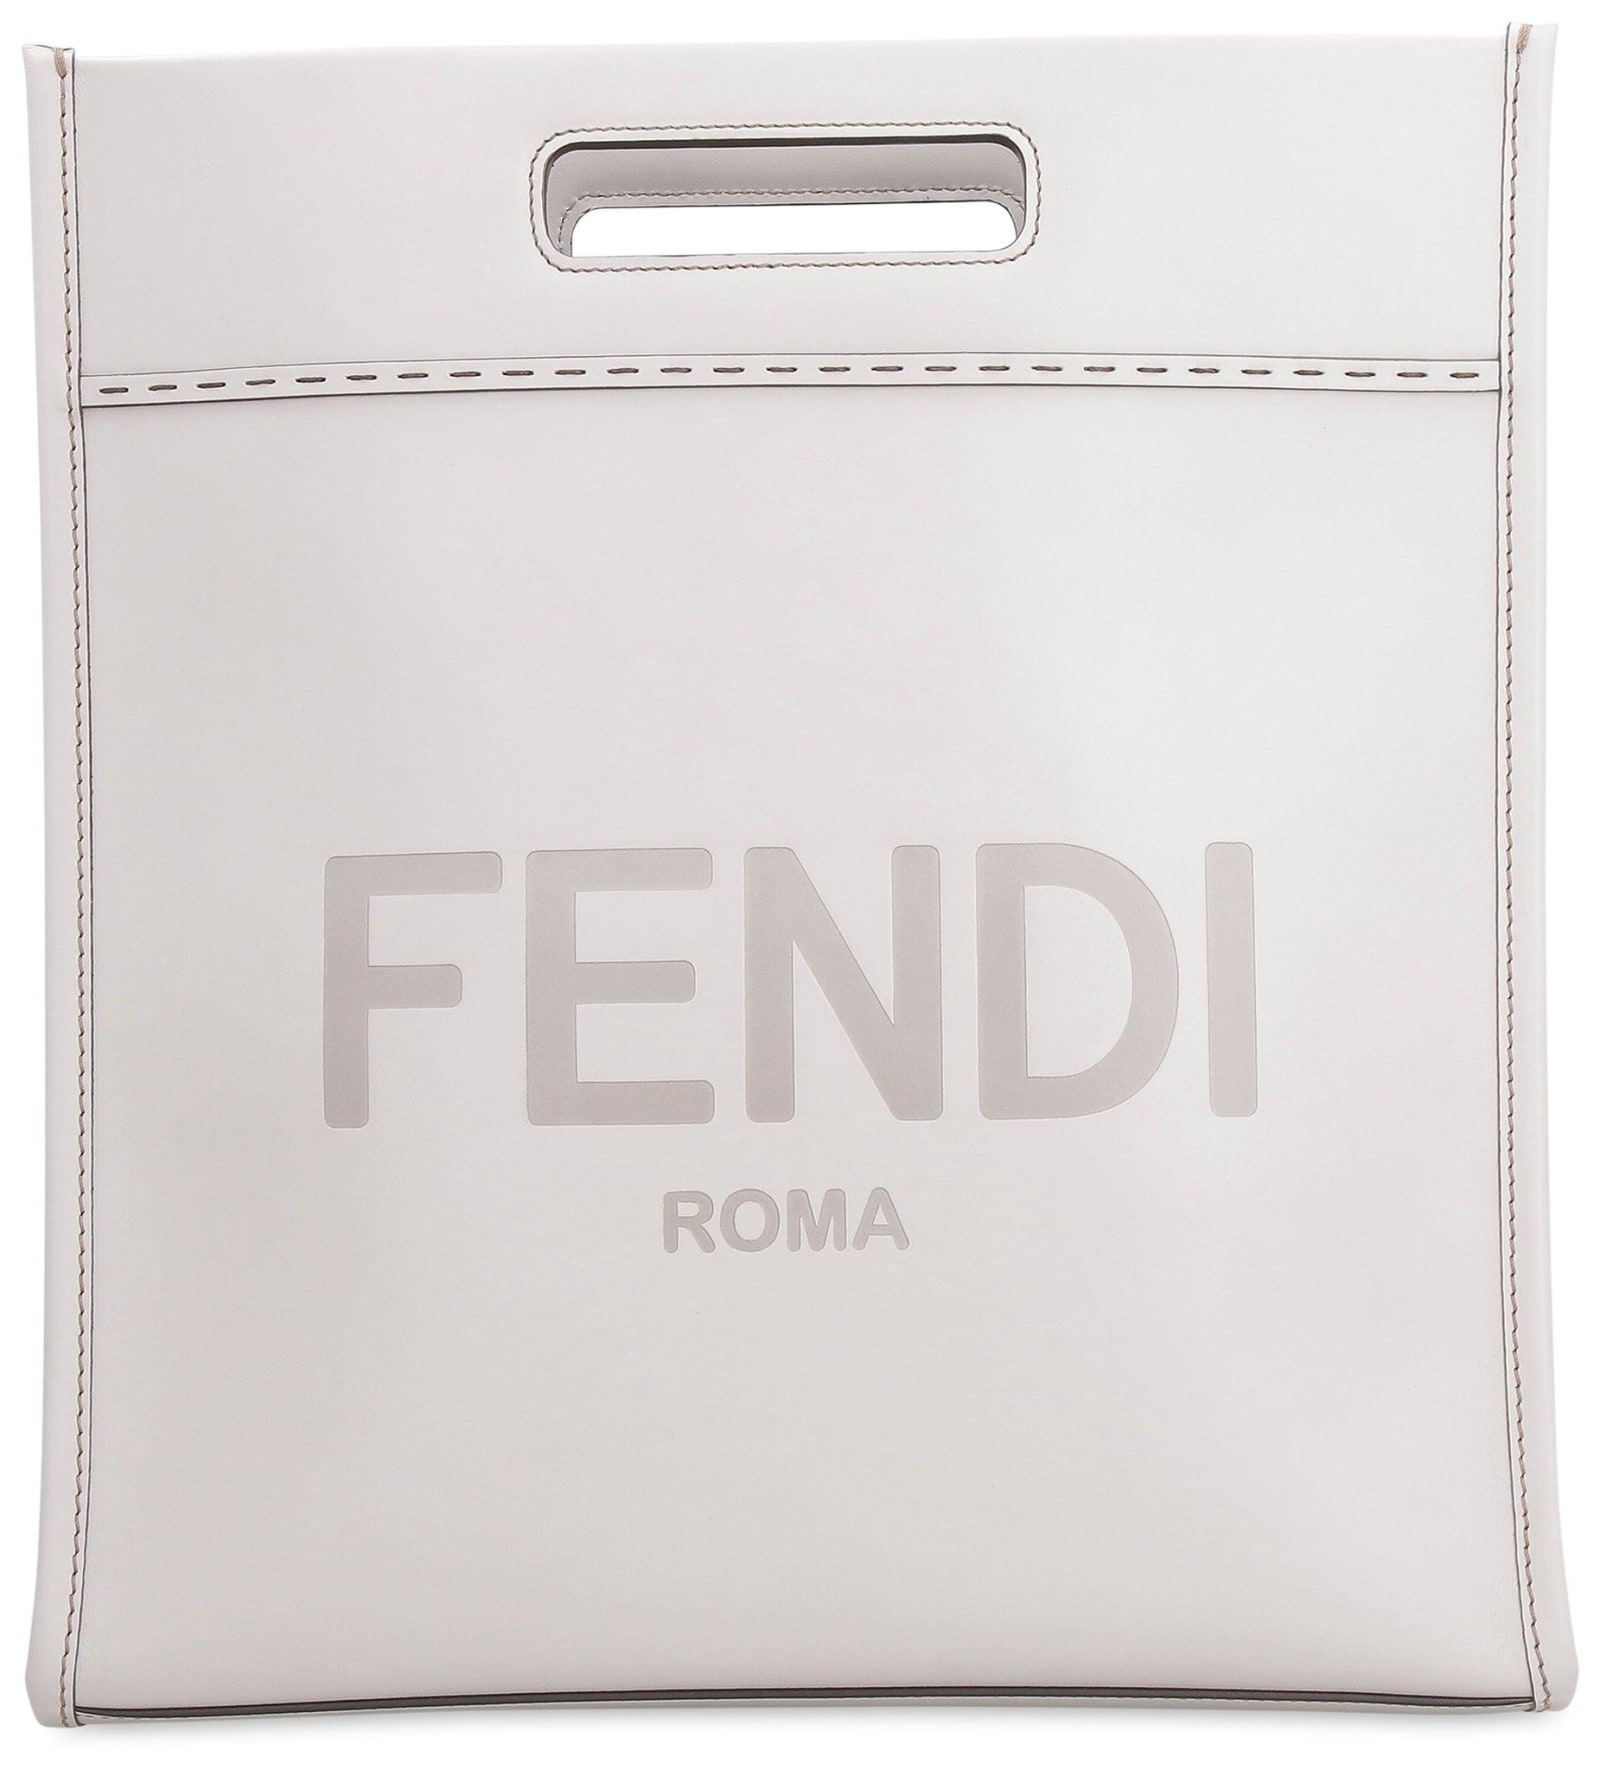 Fendi Roma Lettering Shopper Tote Bag